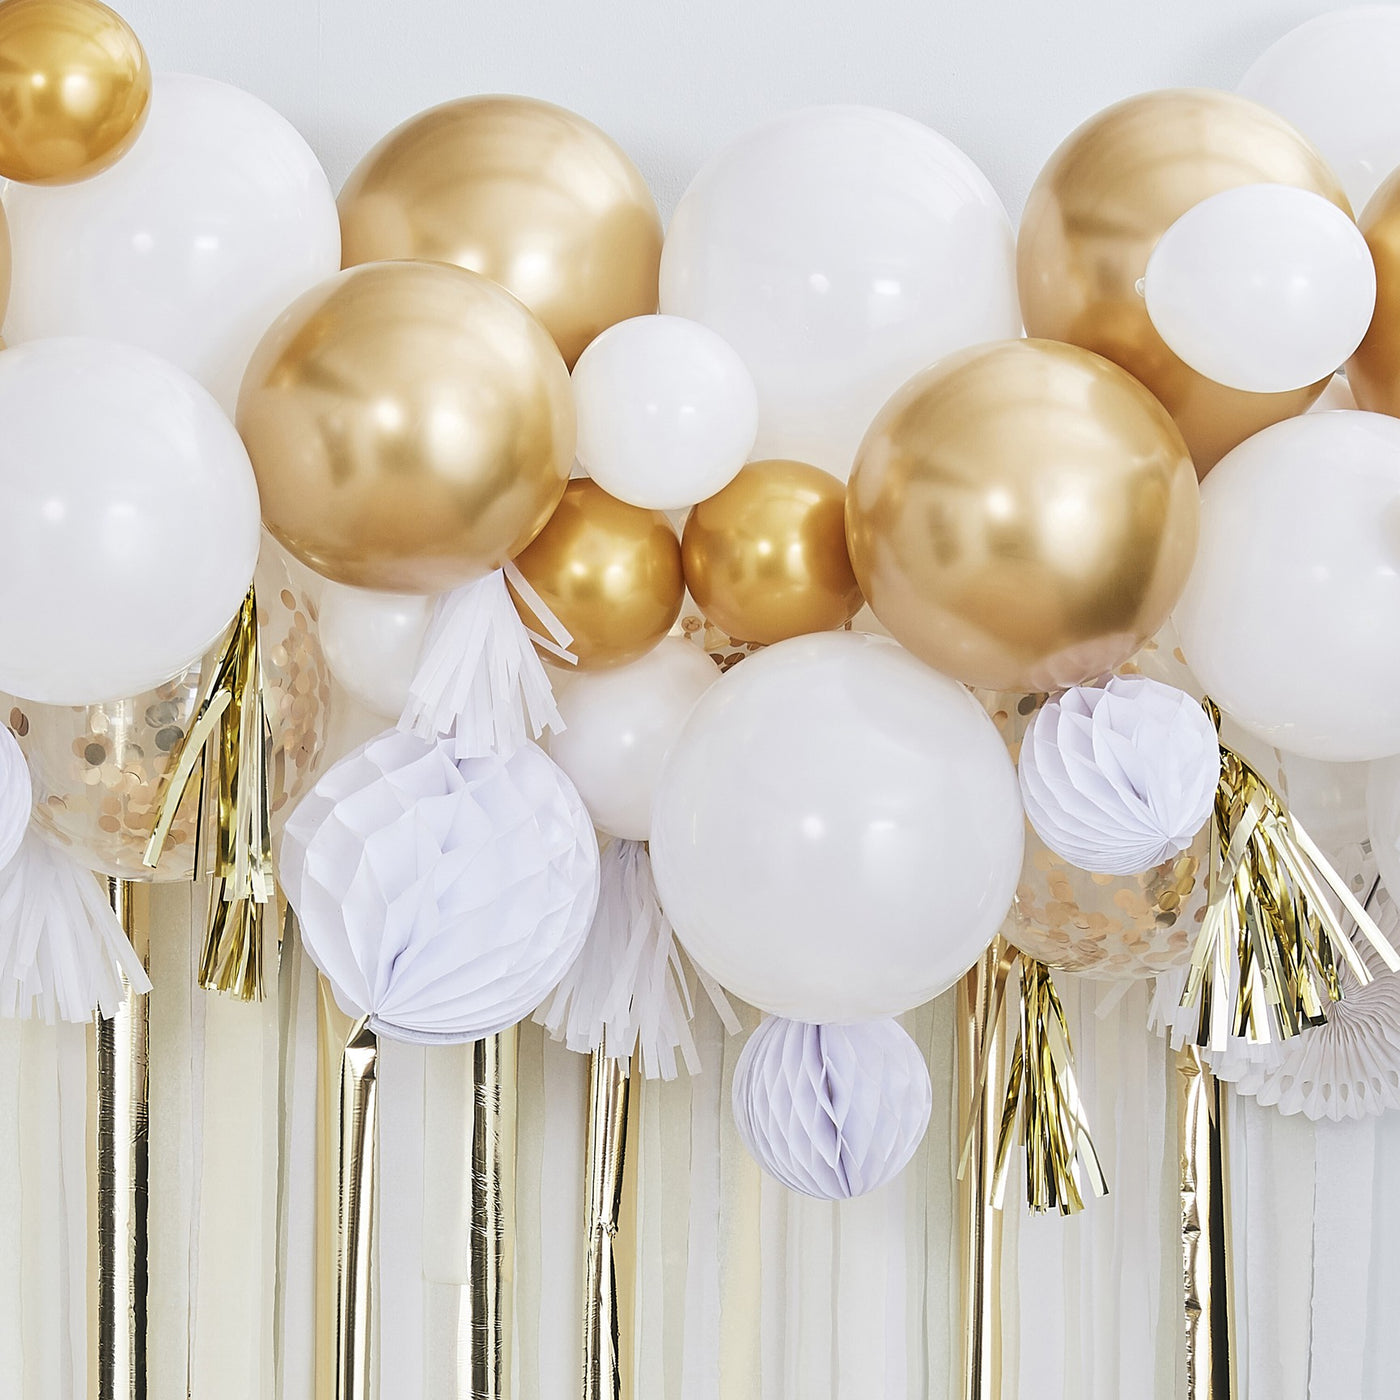 Ballongirlande gold und weiss, DIY, 80 Ballons inkl. 4m Ballonband